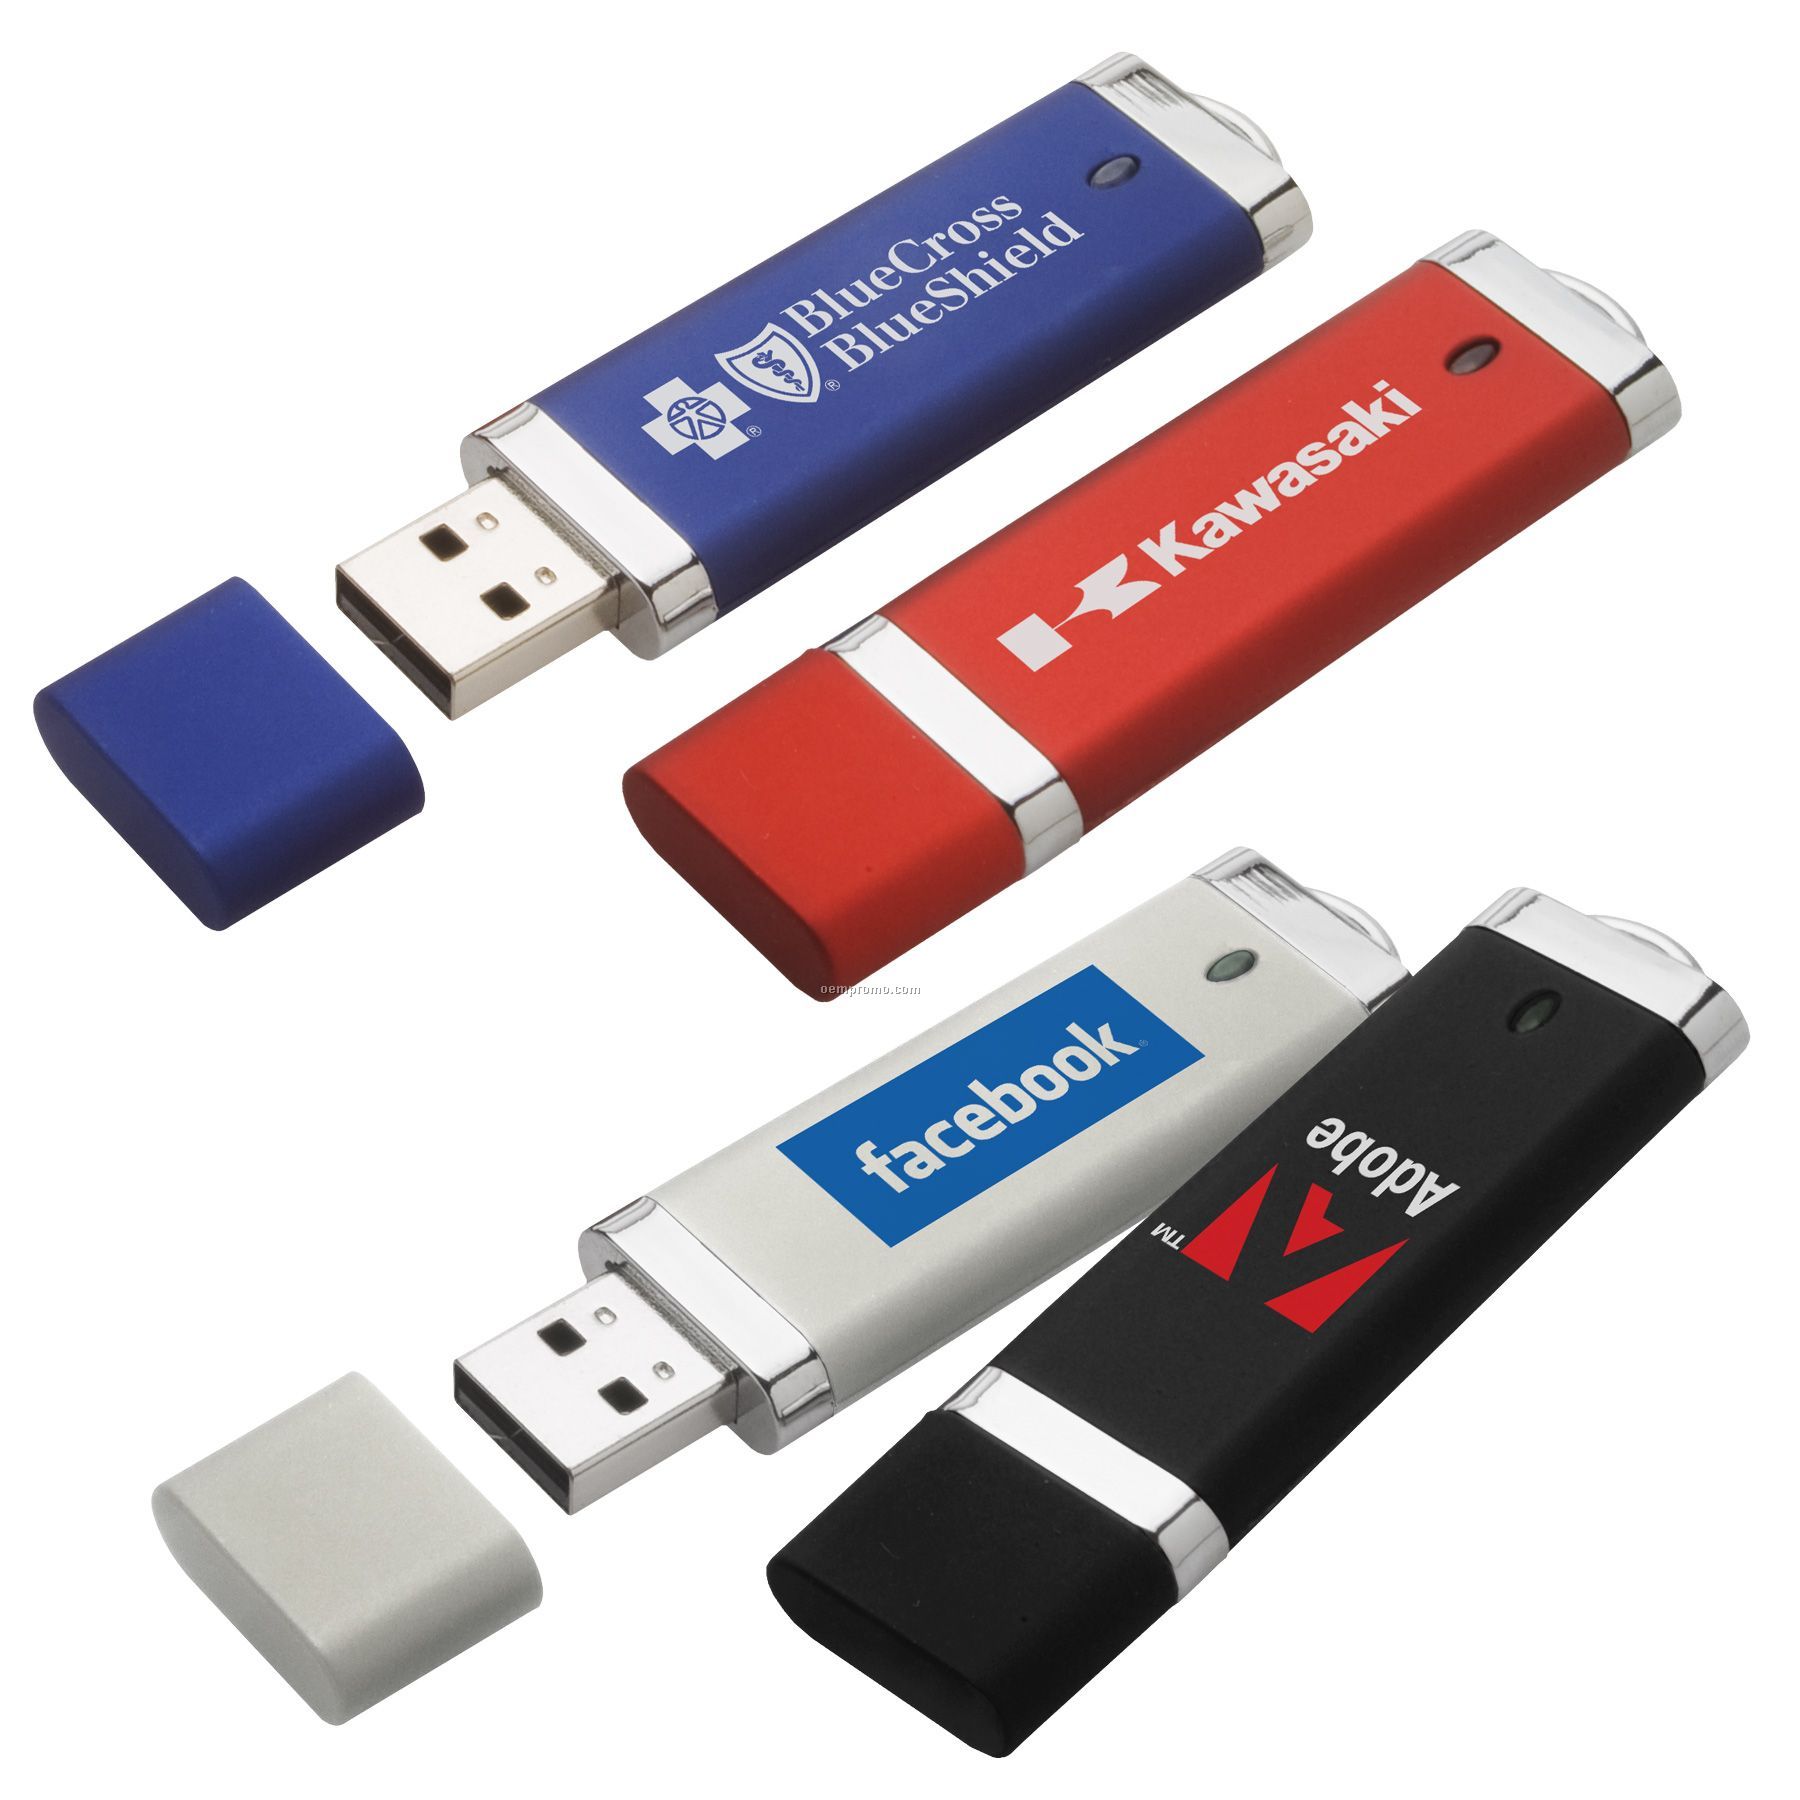 Anzi USB Flash Drive (128 Mb)